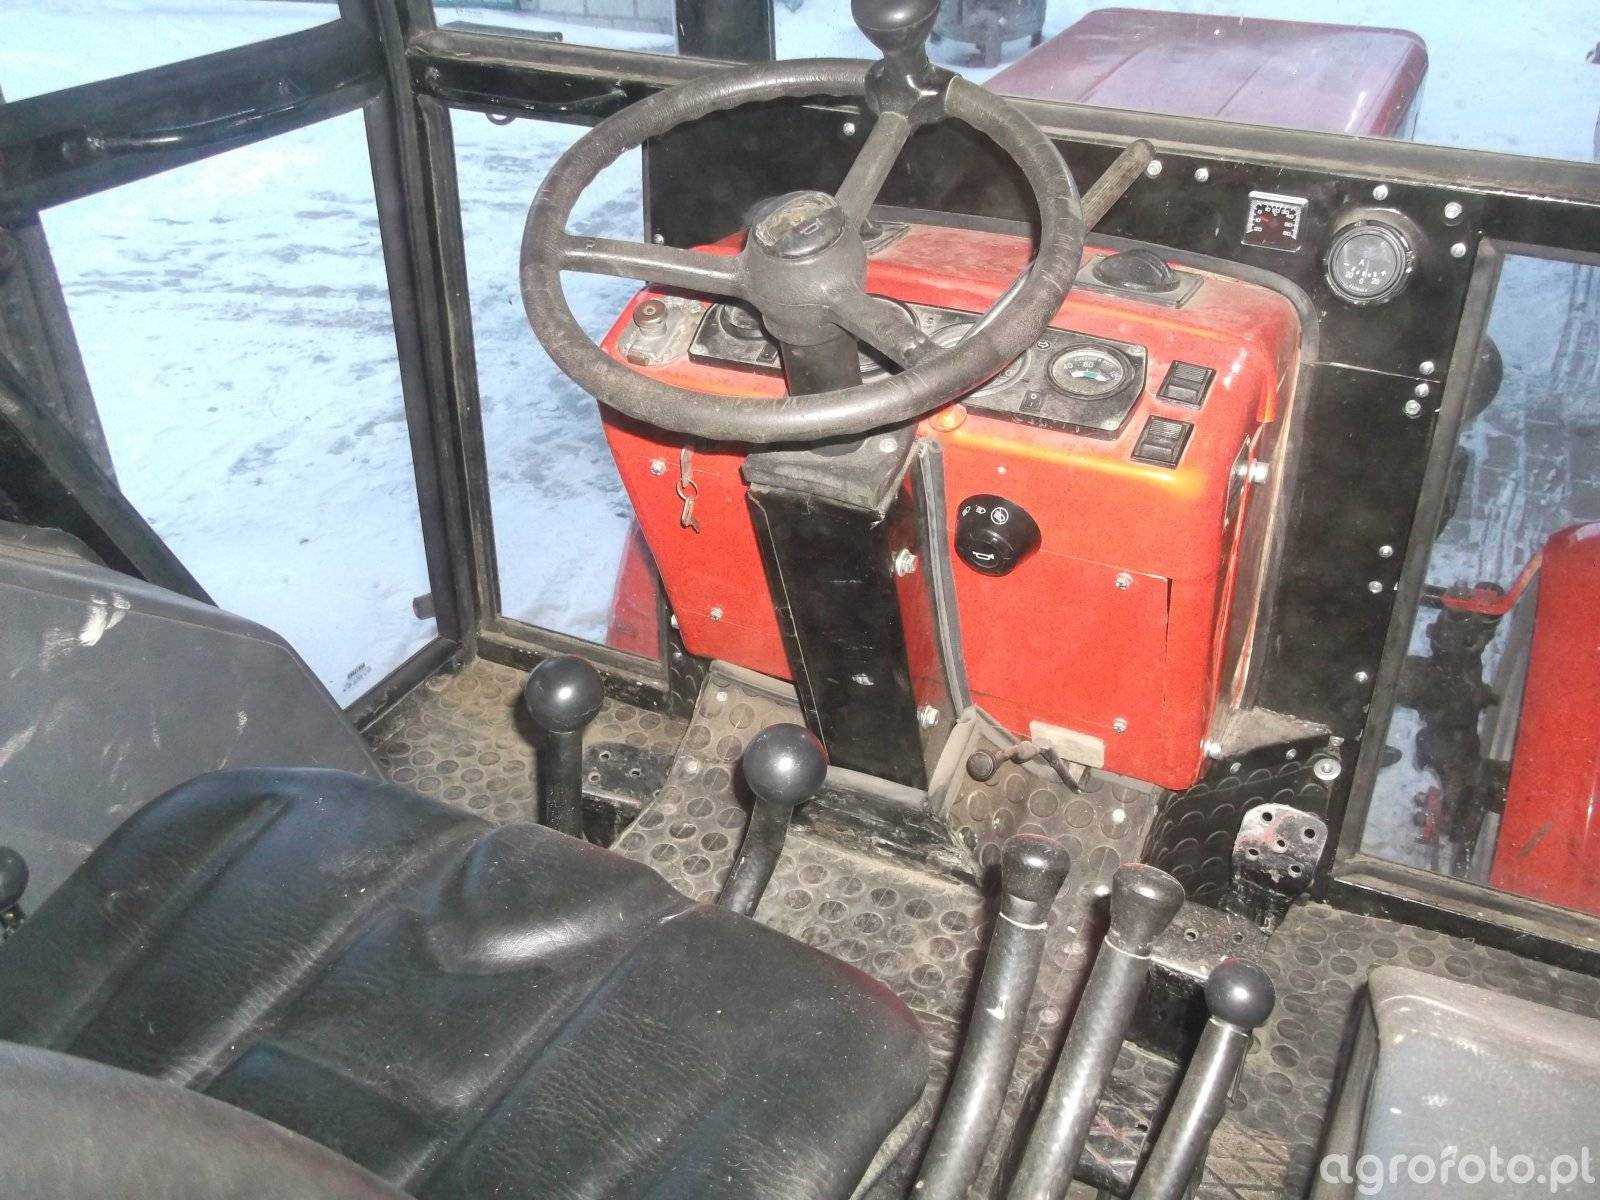 ✅ тюнинг трактора т-25: своими руками, кабины, фото, видео, ремонт, внутренний, внешний - tym-tractor.ru